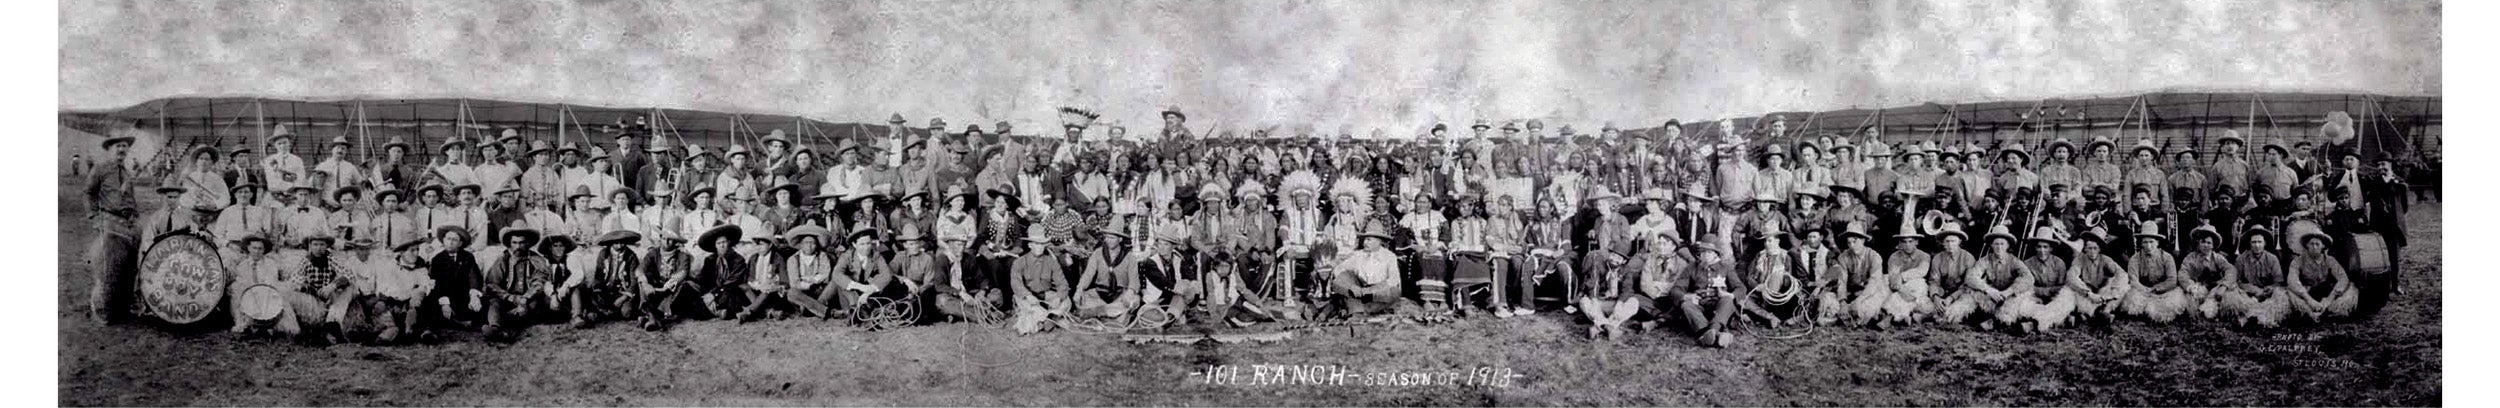 101 Wild West Show, 1913